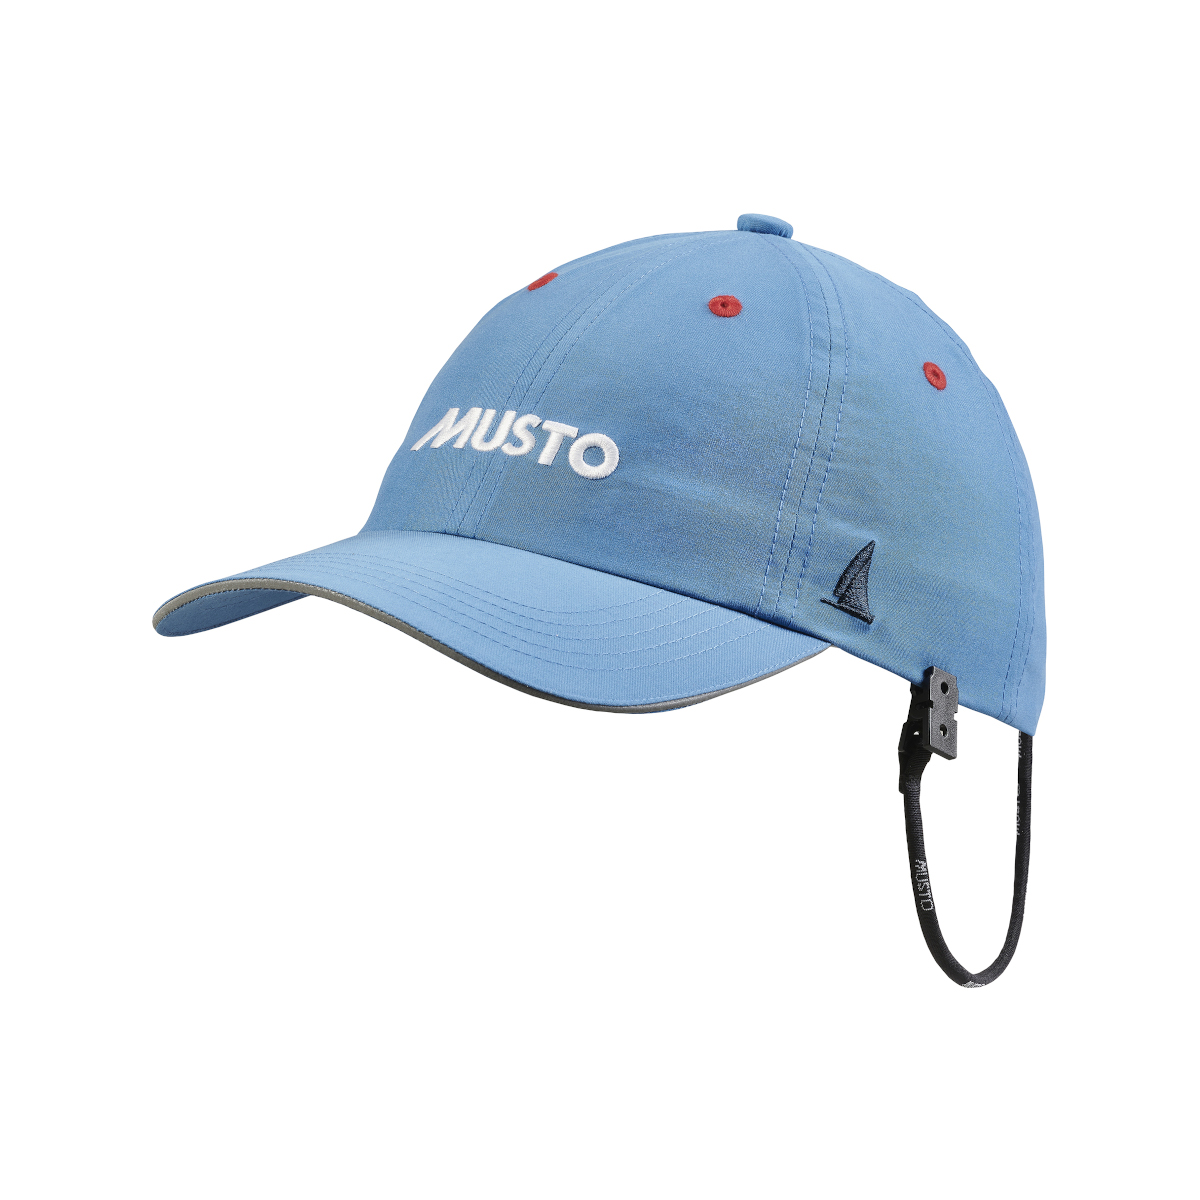 PROMO : Musto Crew Essential Fast Dry casquette voile bleue